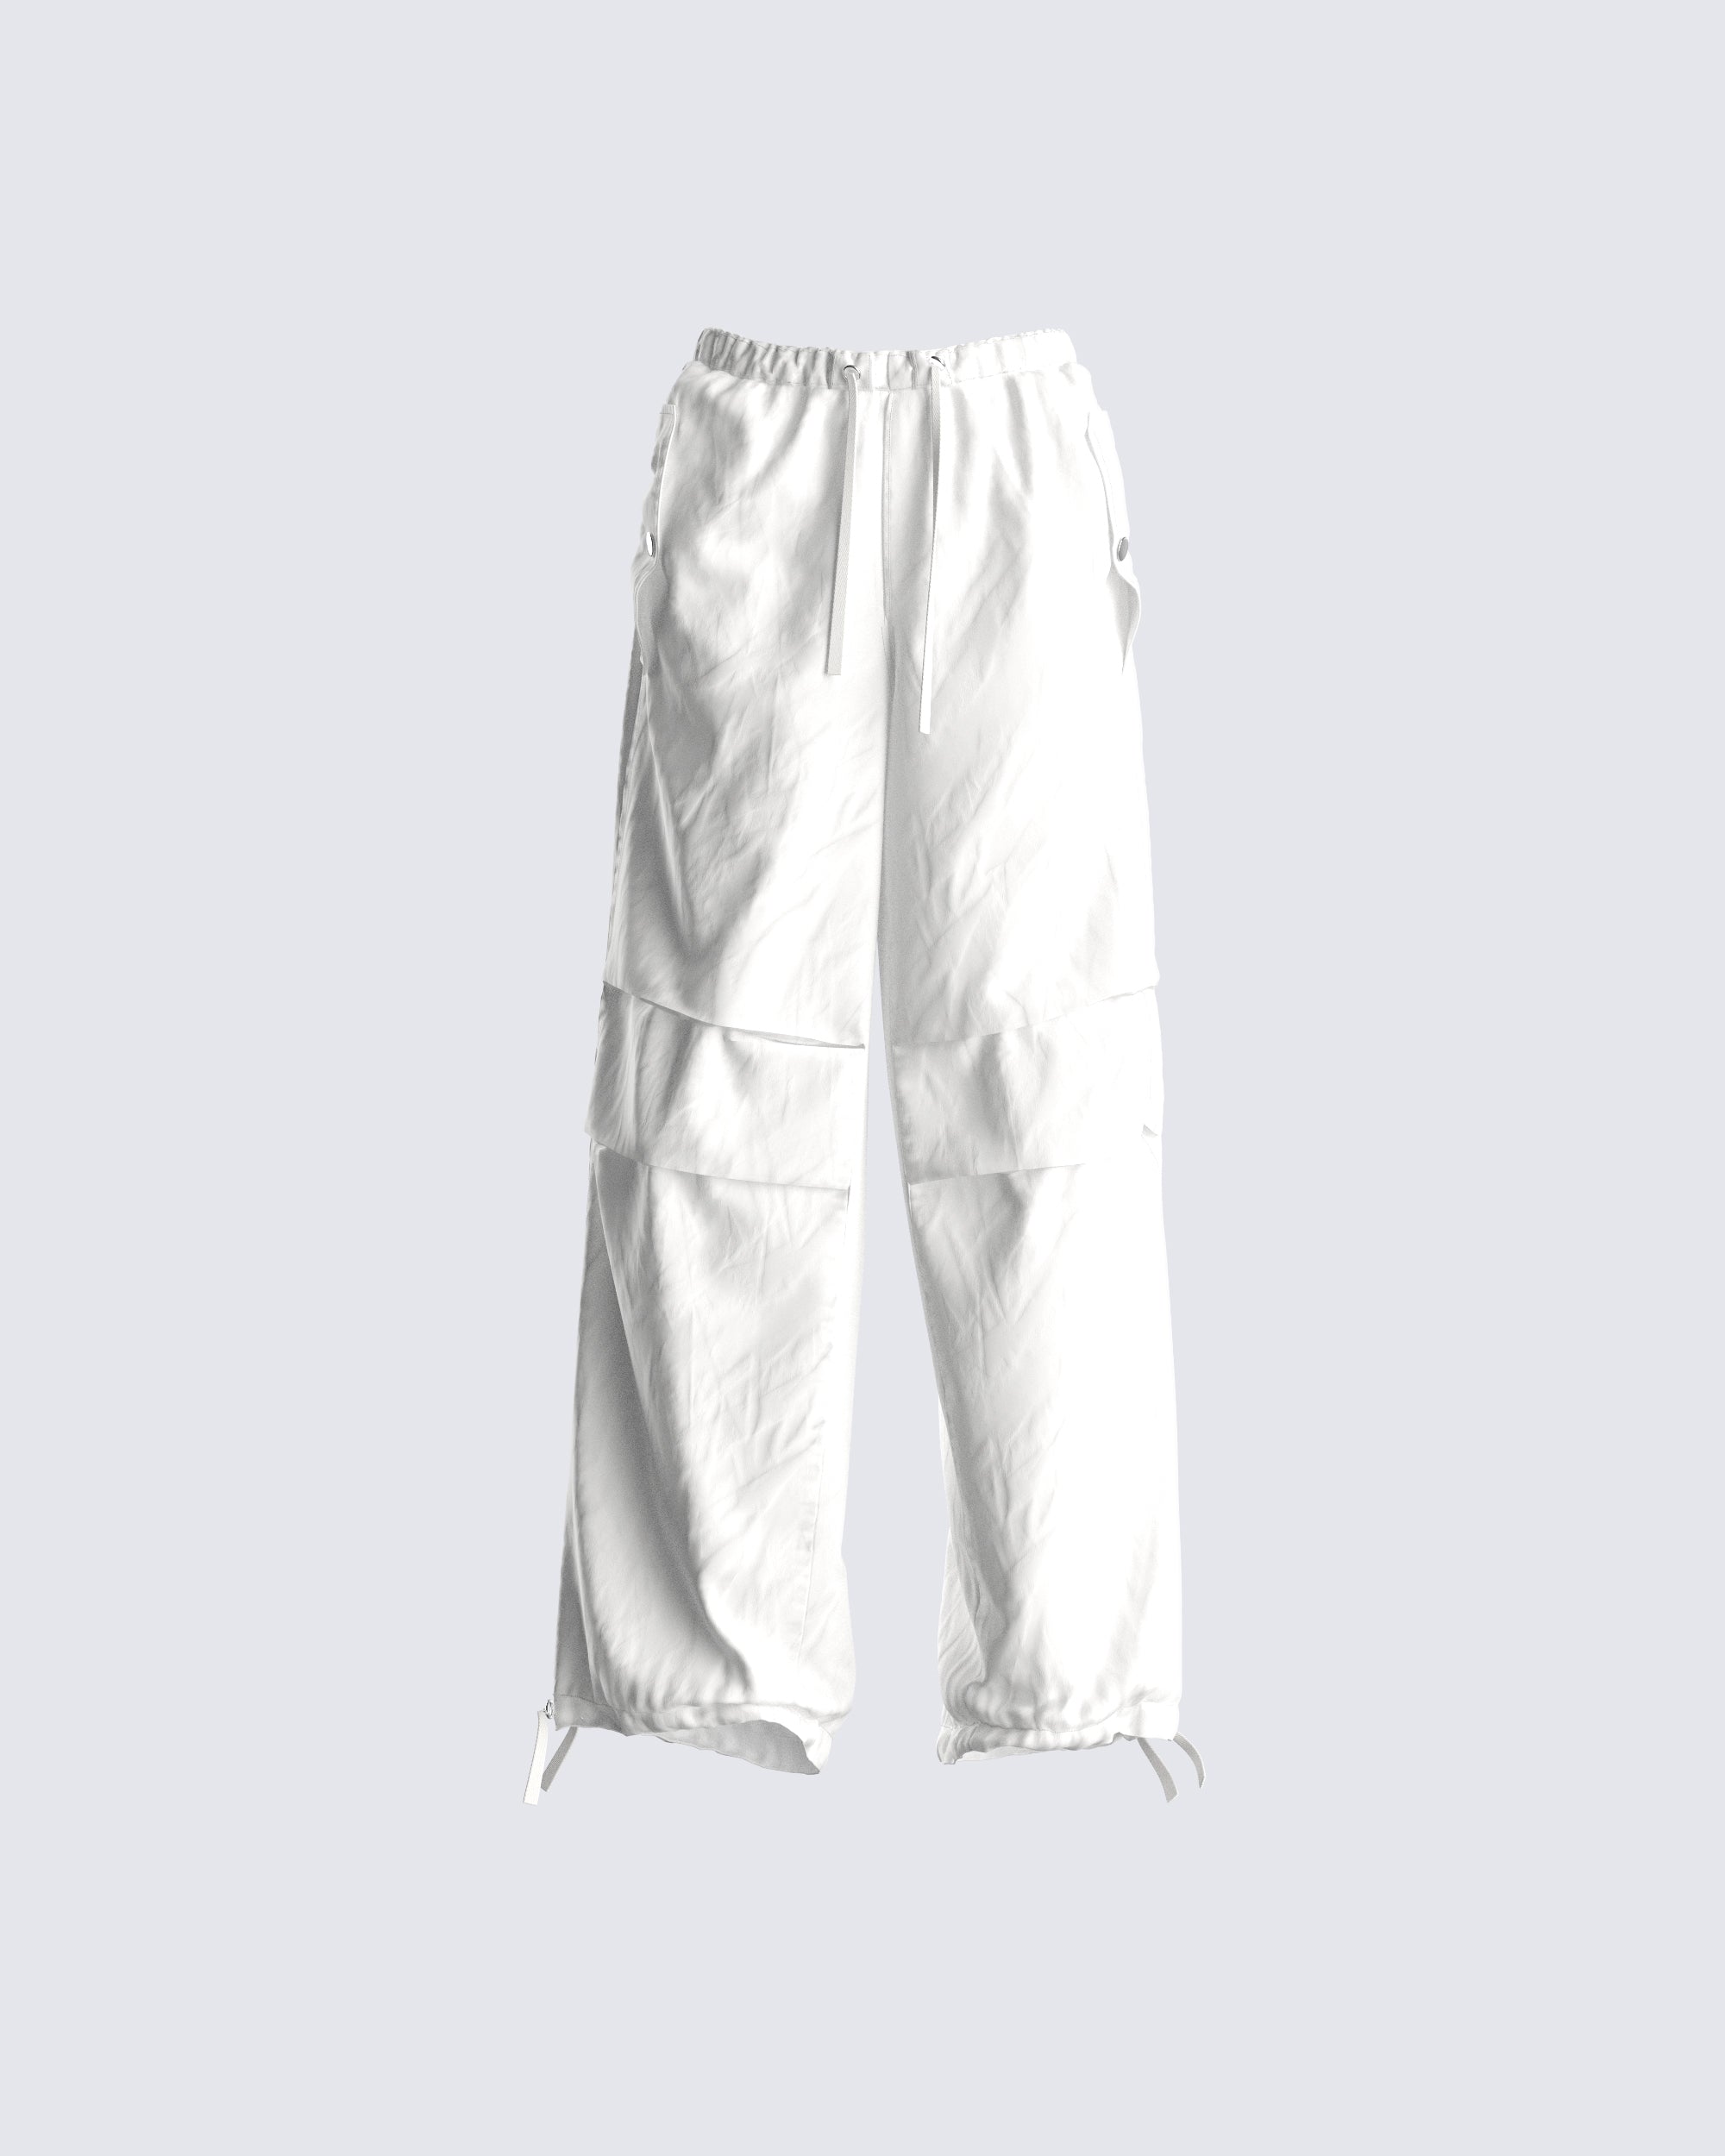 W A N T S Parachute Pants - white